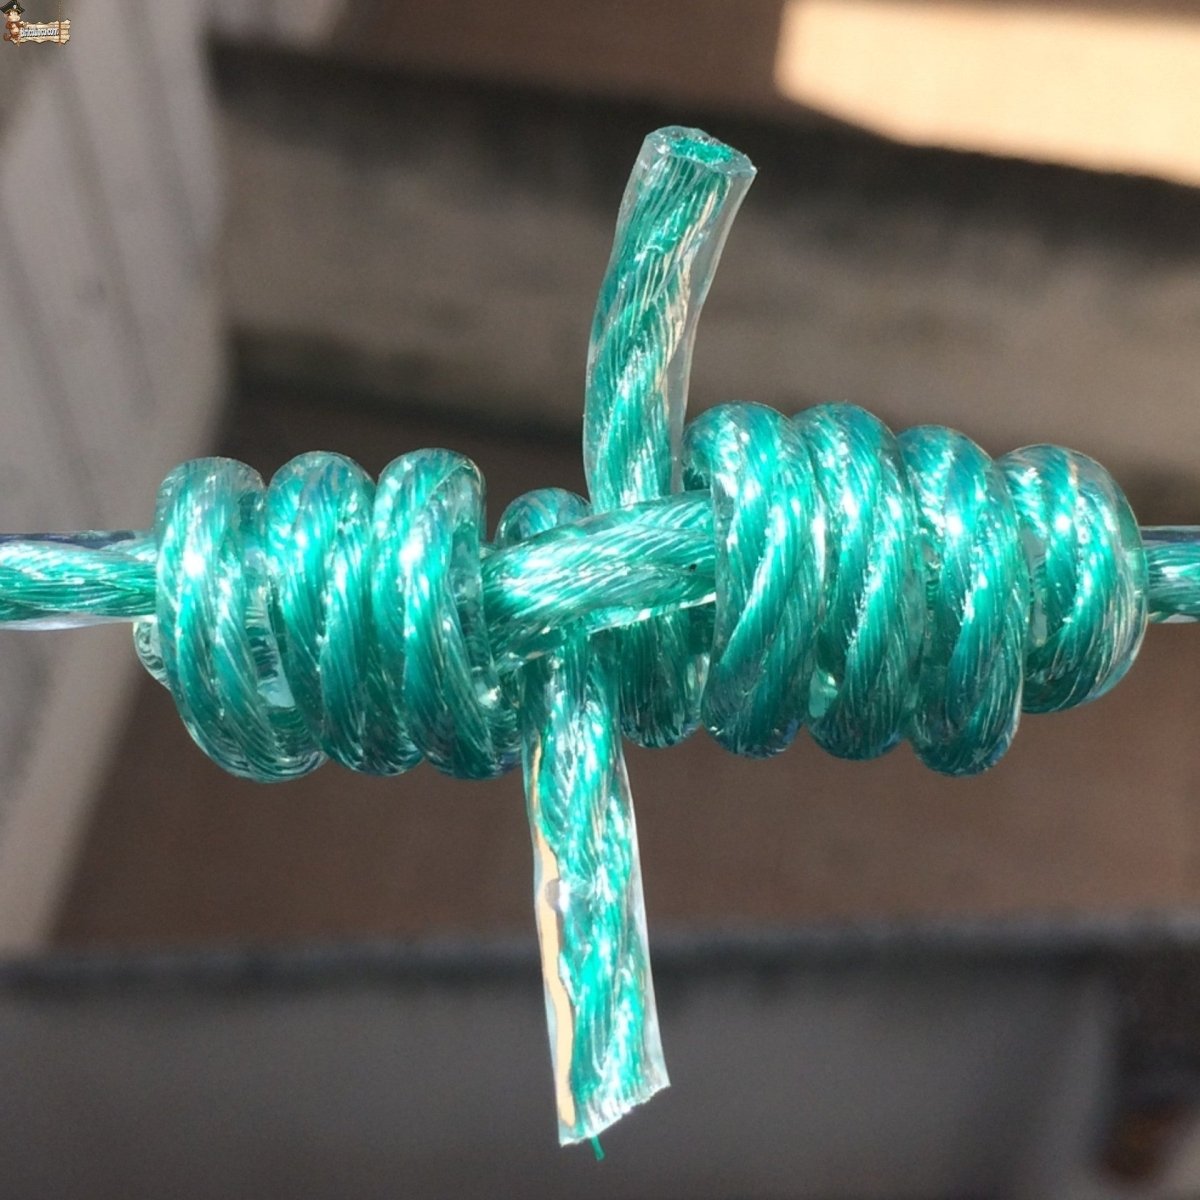 Cuerda Tendedero Exterior. Cuerda Plástico para Tender Ropa